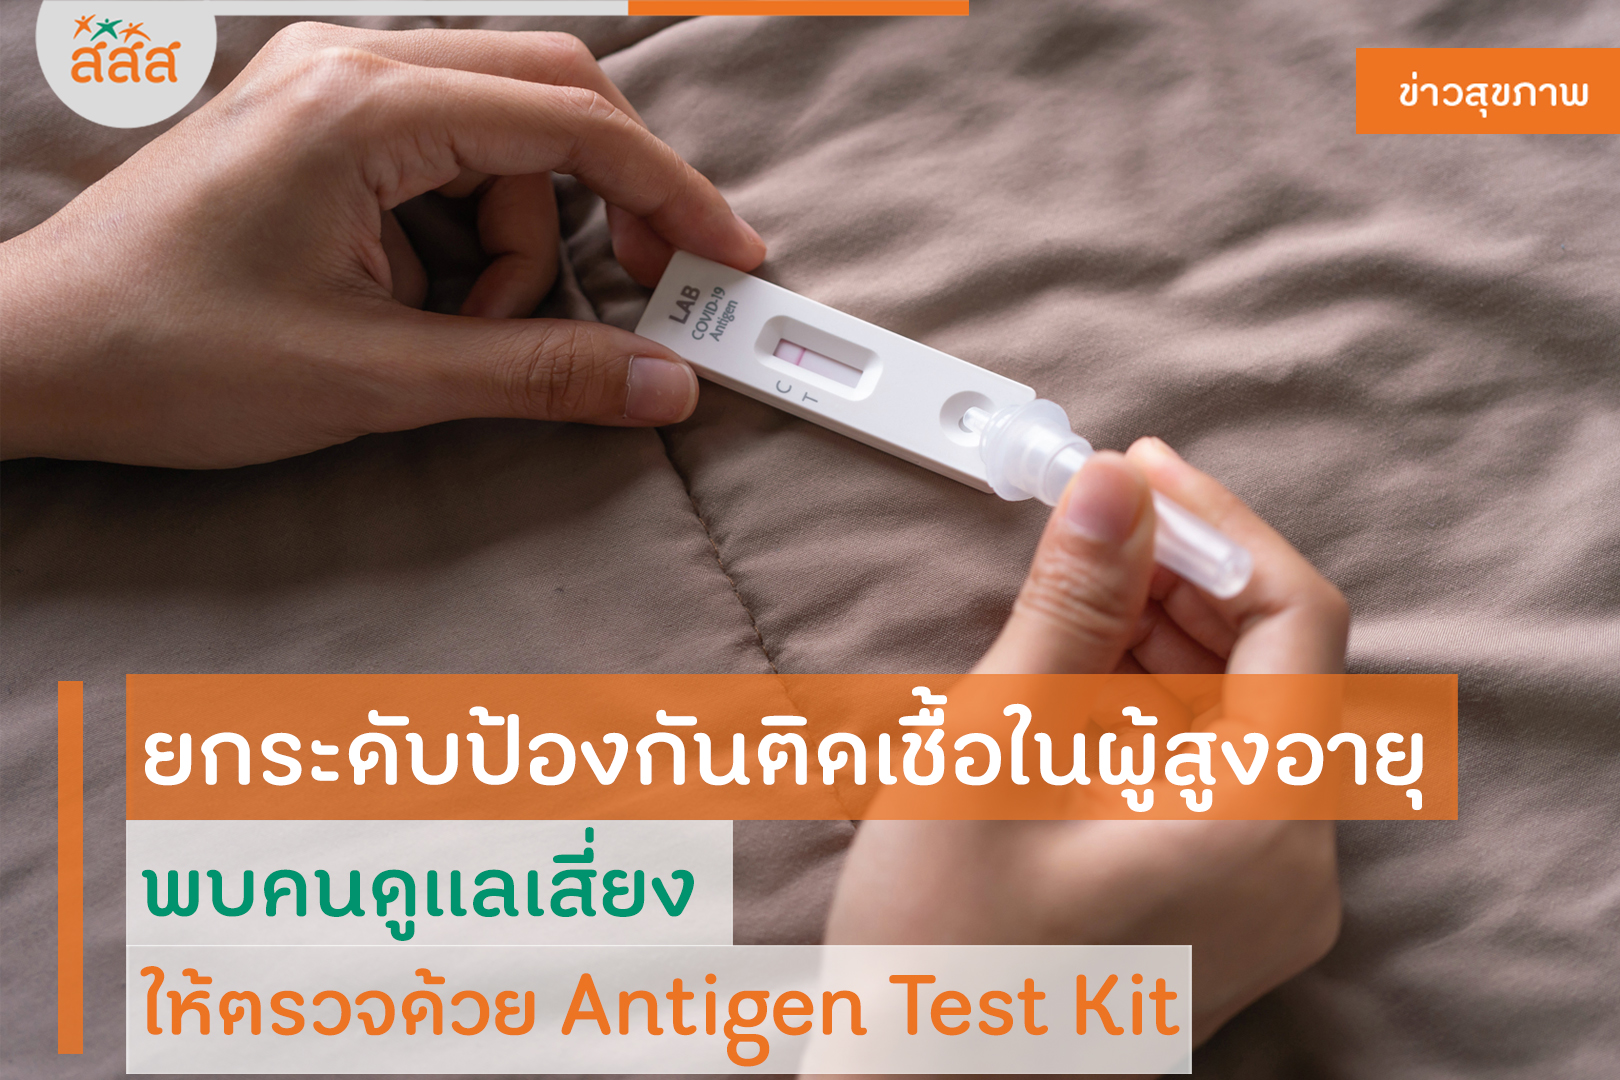 ยกระดับป้องกันติดเชื้อในผู้สูงอายุ พบคนดูแลเสี่ยง ให้ตรวจด้วย Antigen Test Kit thaihealth